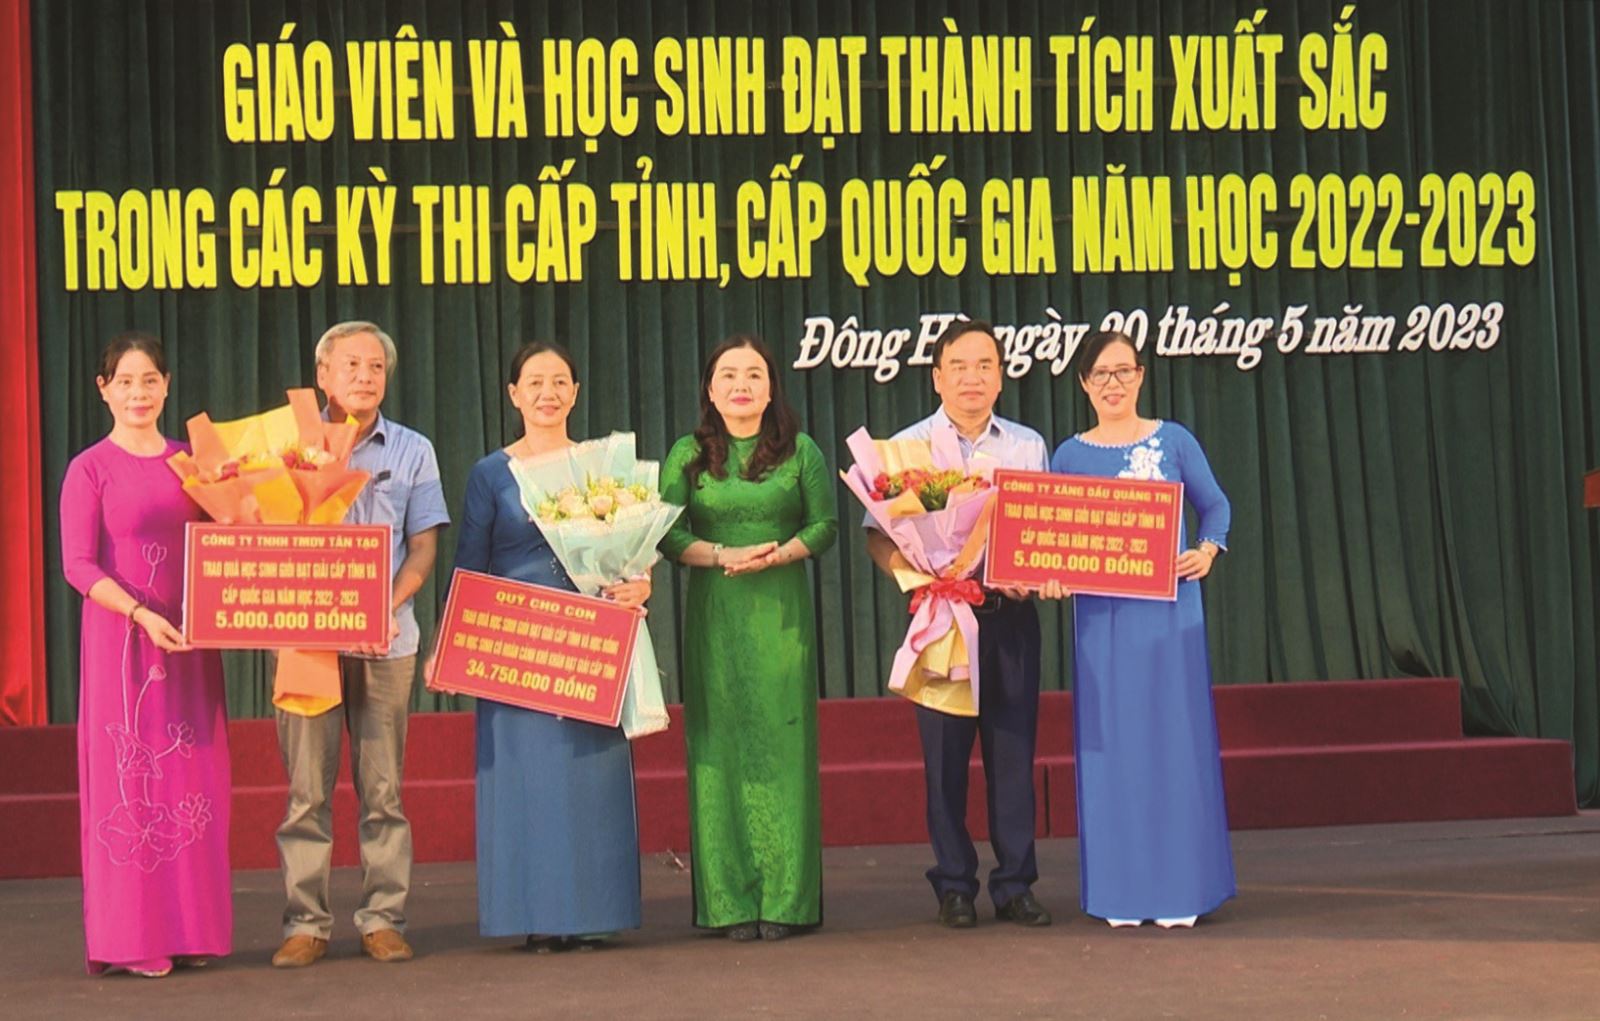 Quảng Trị: Thành phố Đông Hà tuyên dương, khen thưởng giáo viên và học sinh đạt thành tích xuất sắc trong Kỳ thi cấp tỉnh, cấp quốc gia